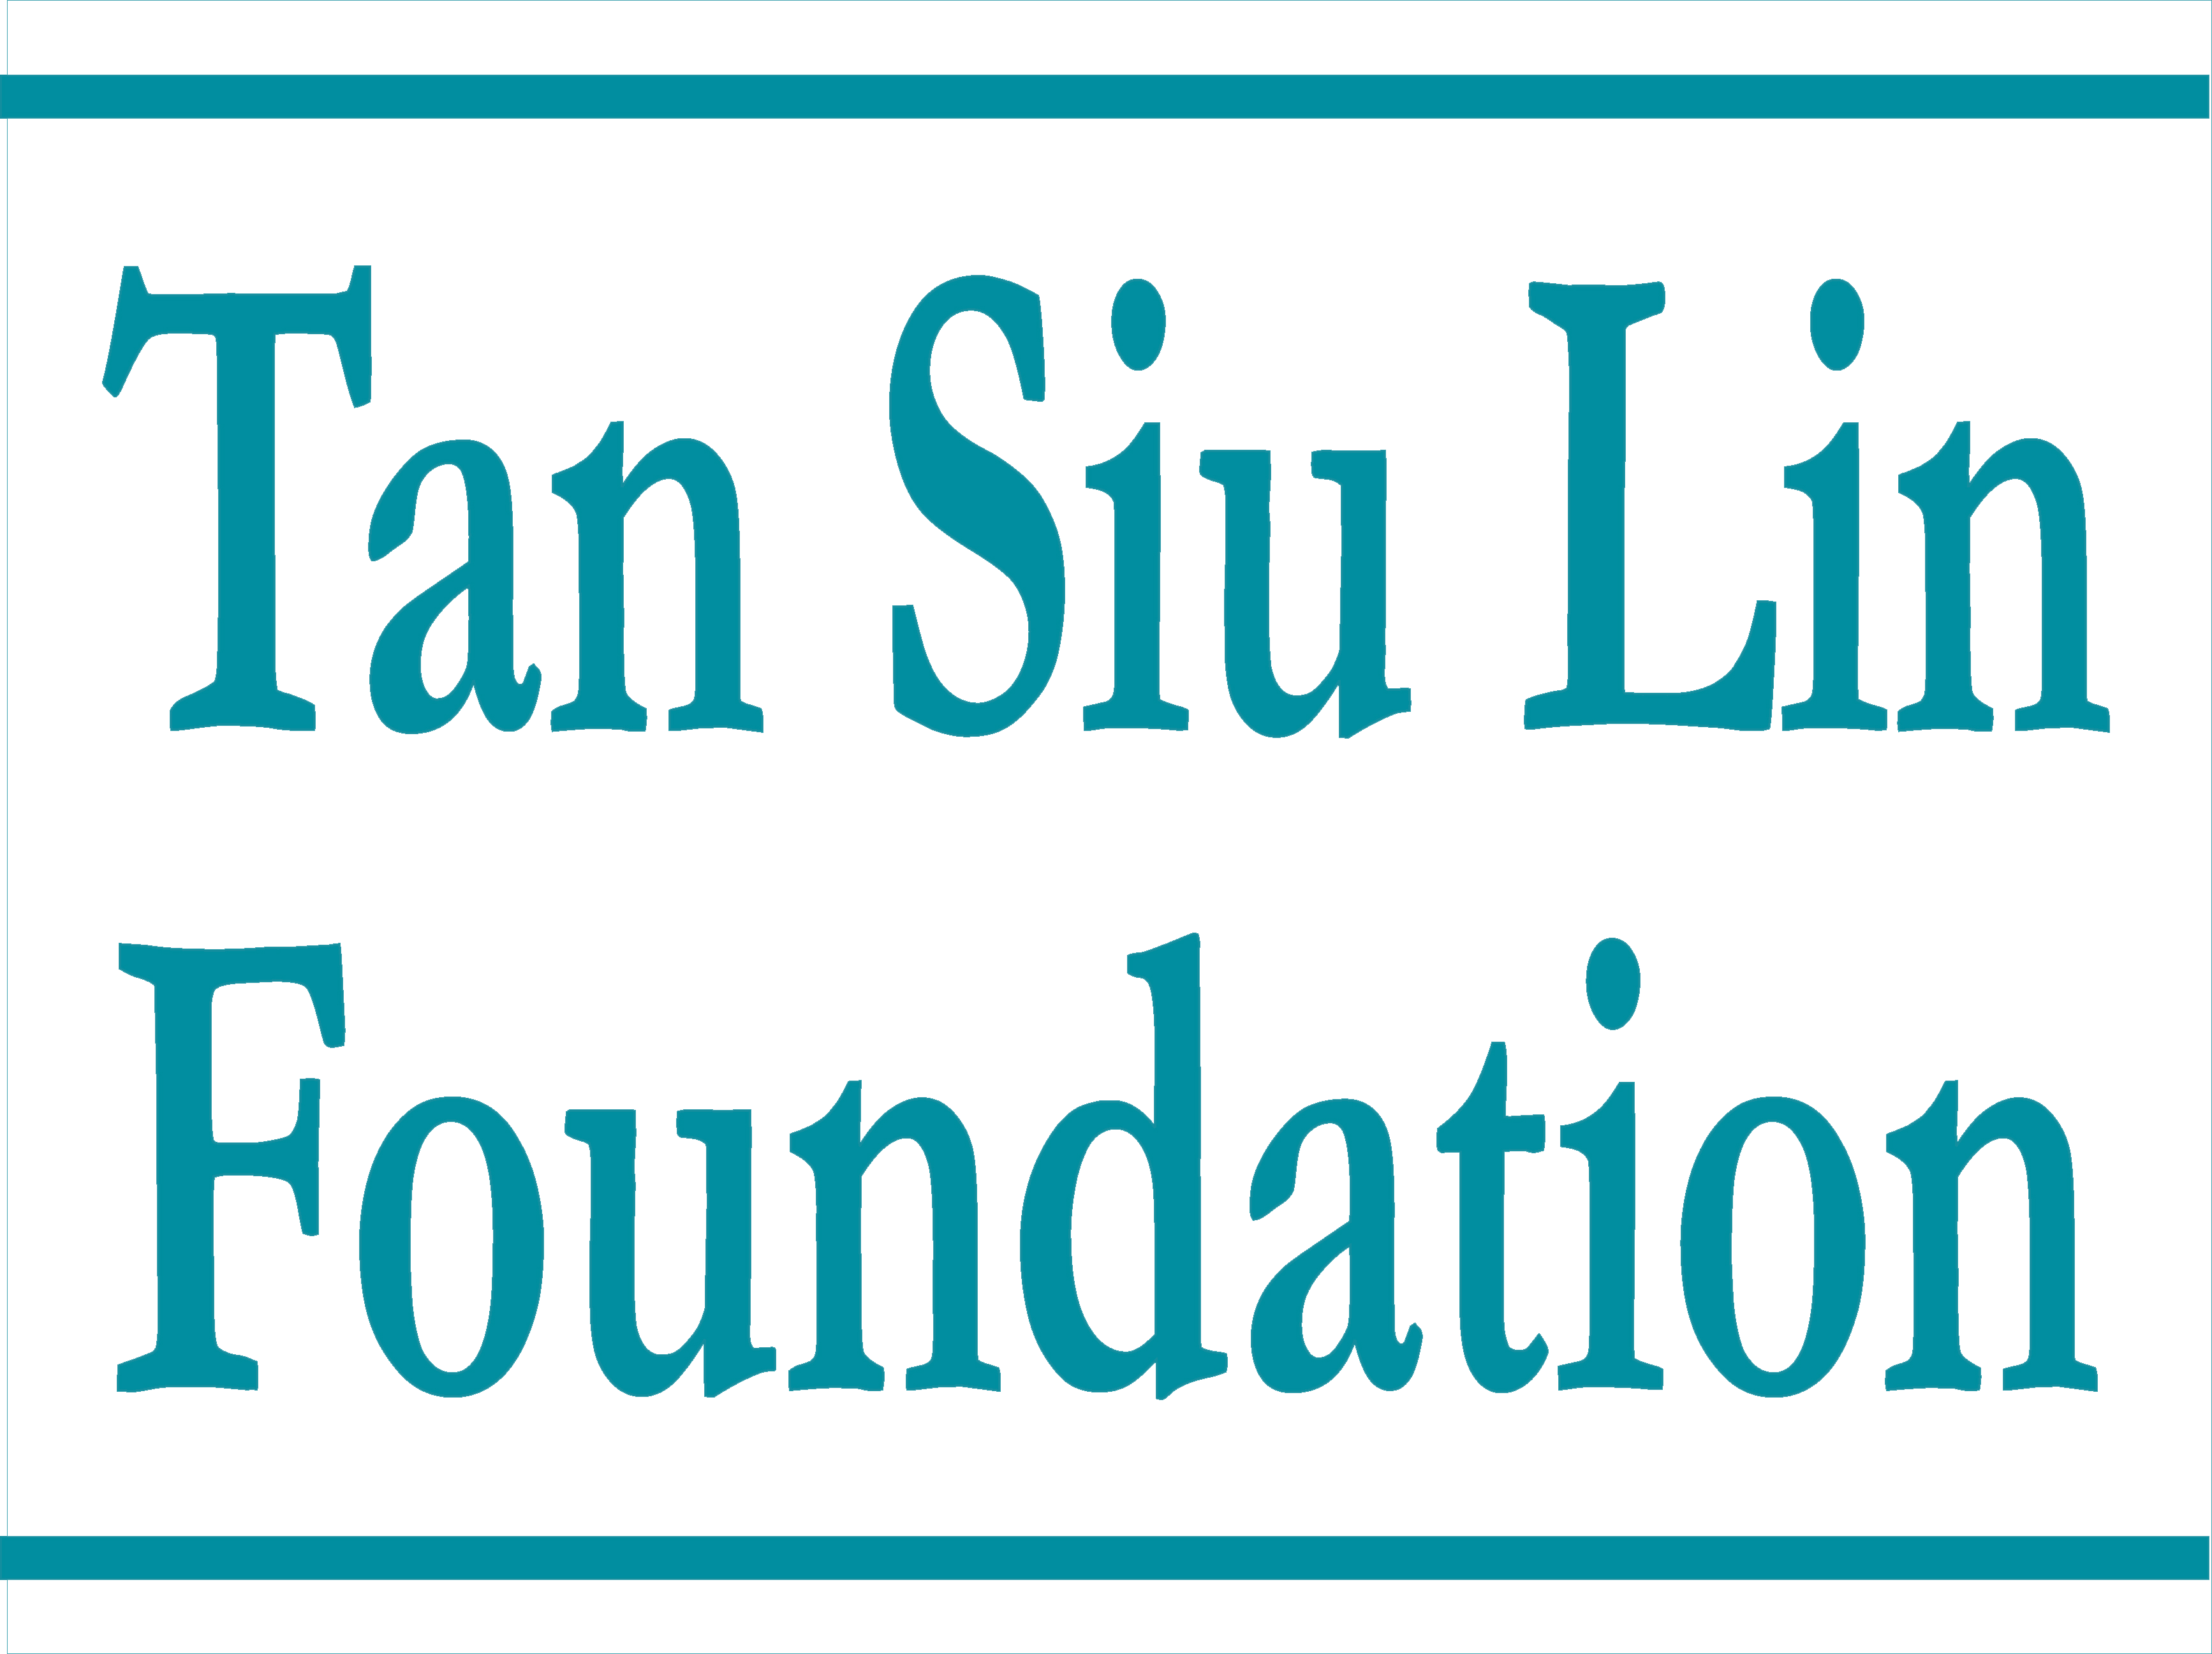 TSL Foundation